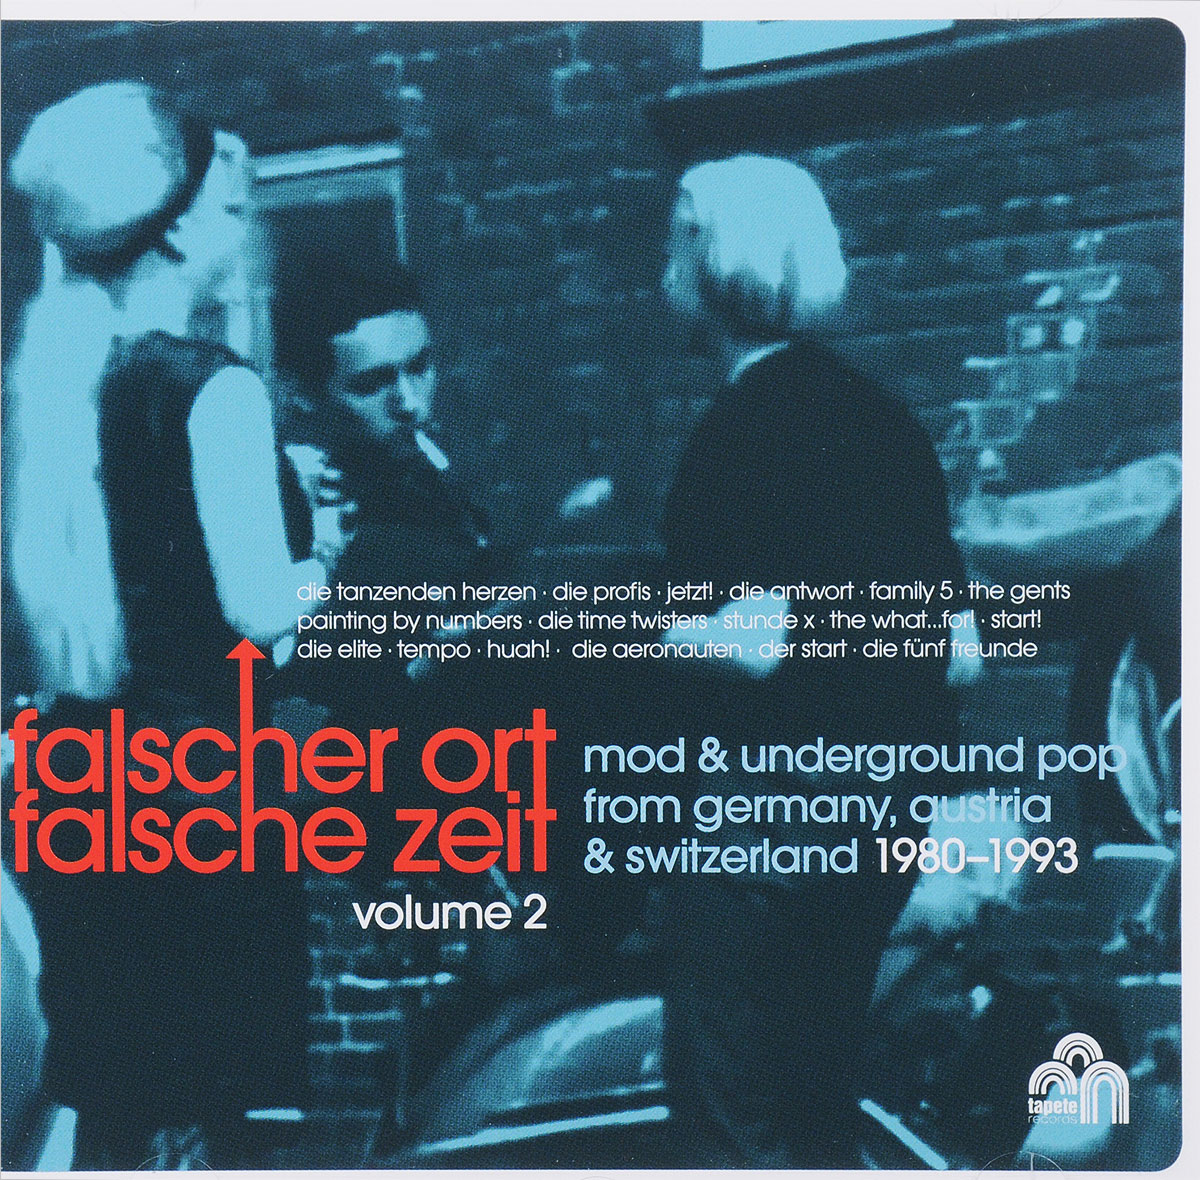 Falscher Ort Falsche Zeit. Volume 2. Mod & Underground Pop From Germany, Austia & Switzerland 1980-1993